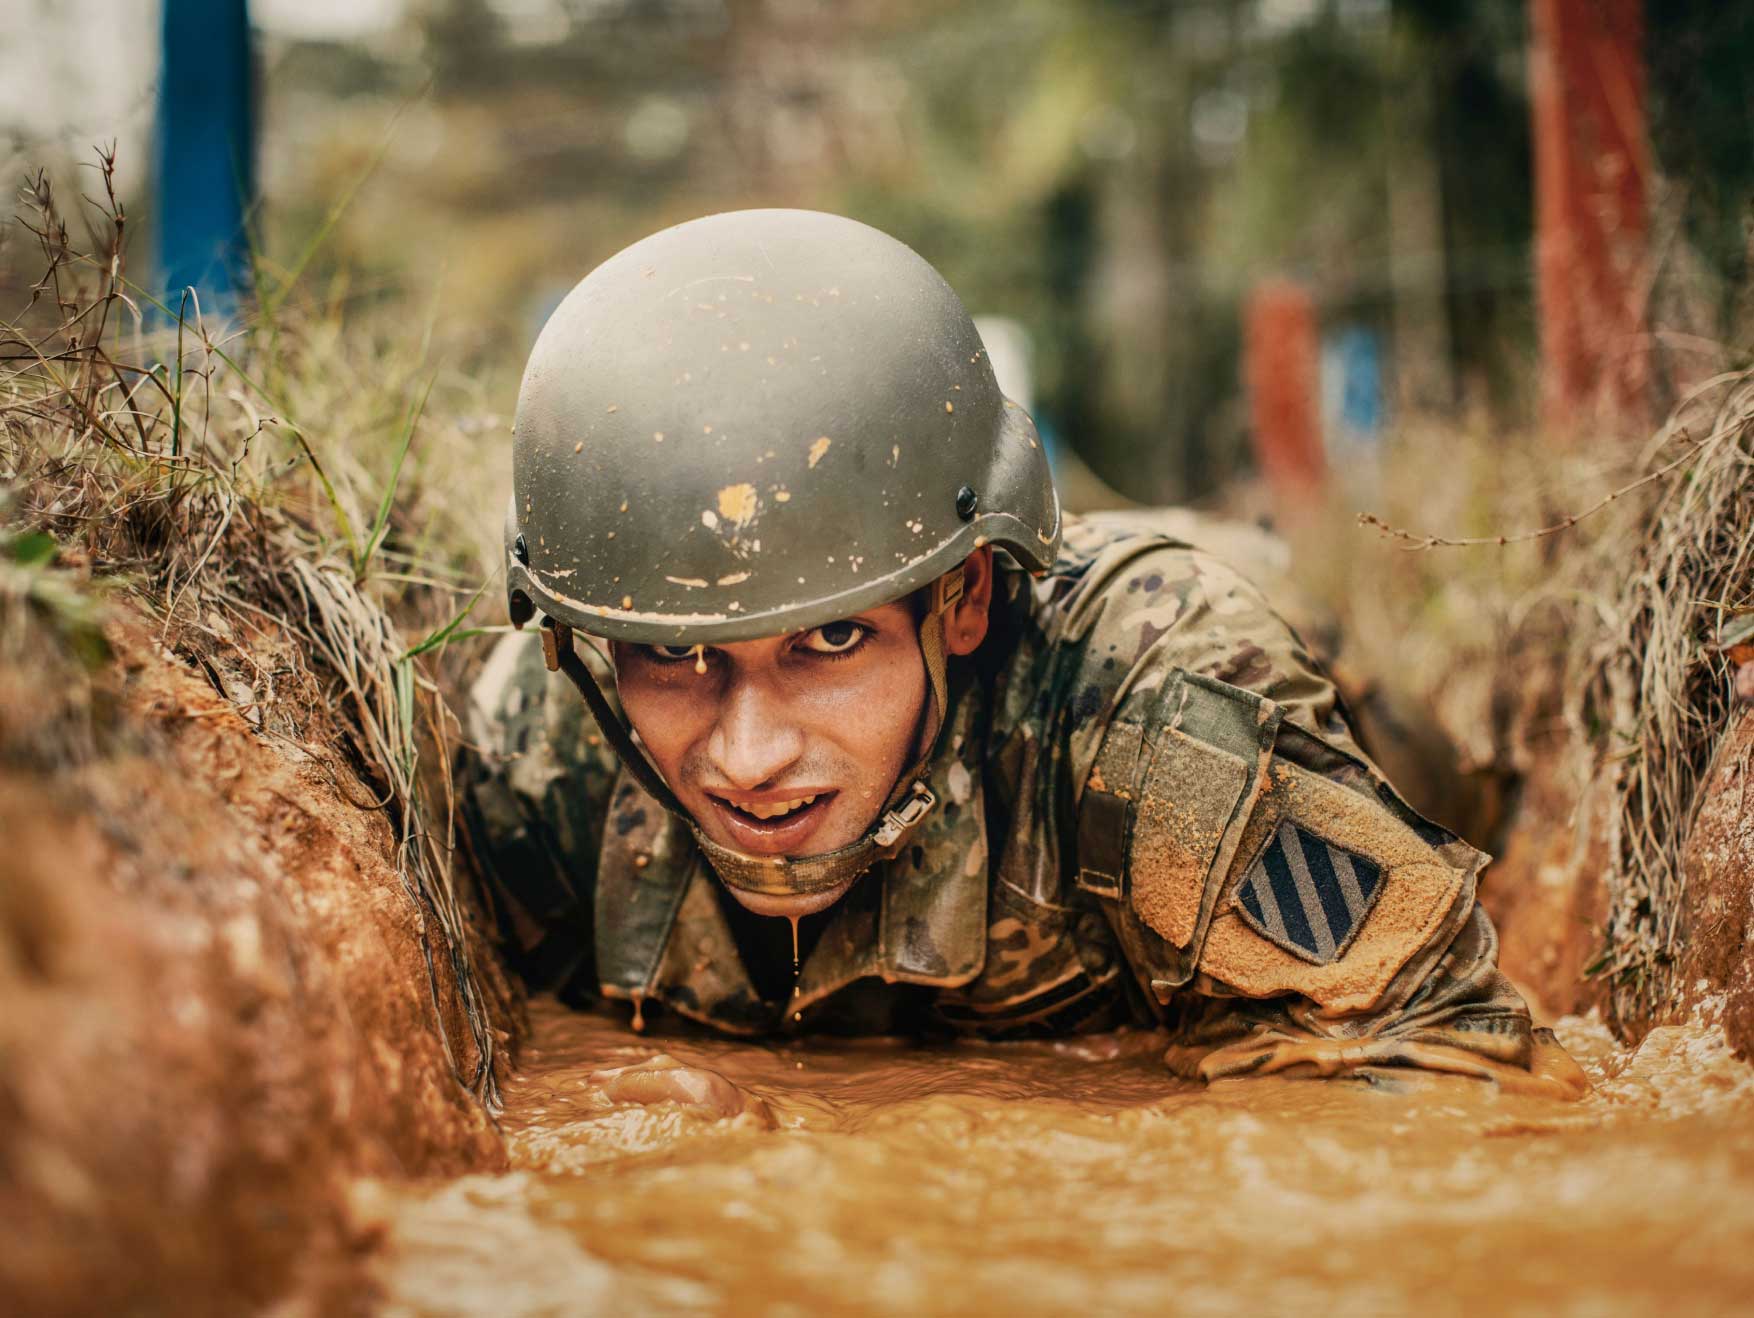 Un Soldado enlistado arrastrándose en el lodo durante un entrenamiento